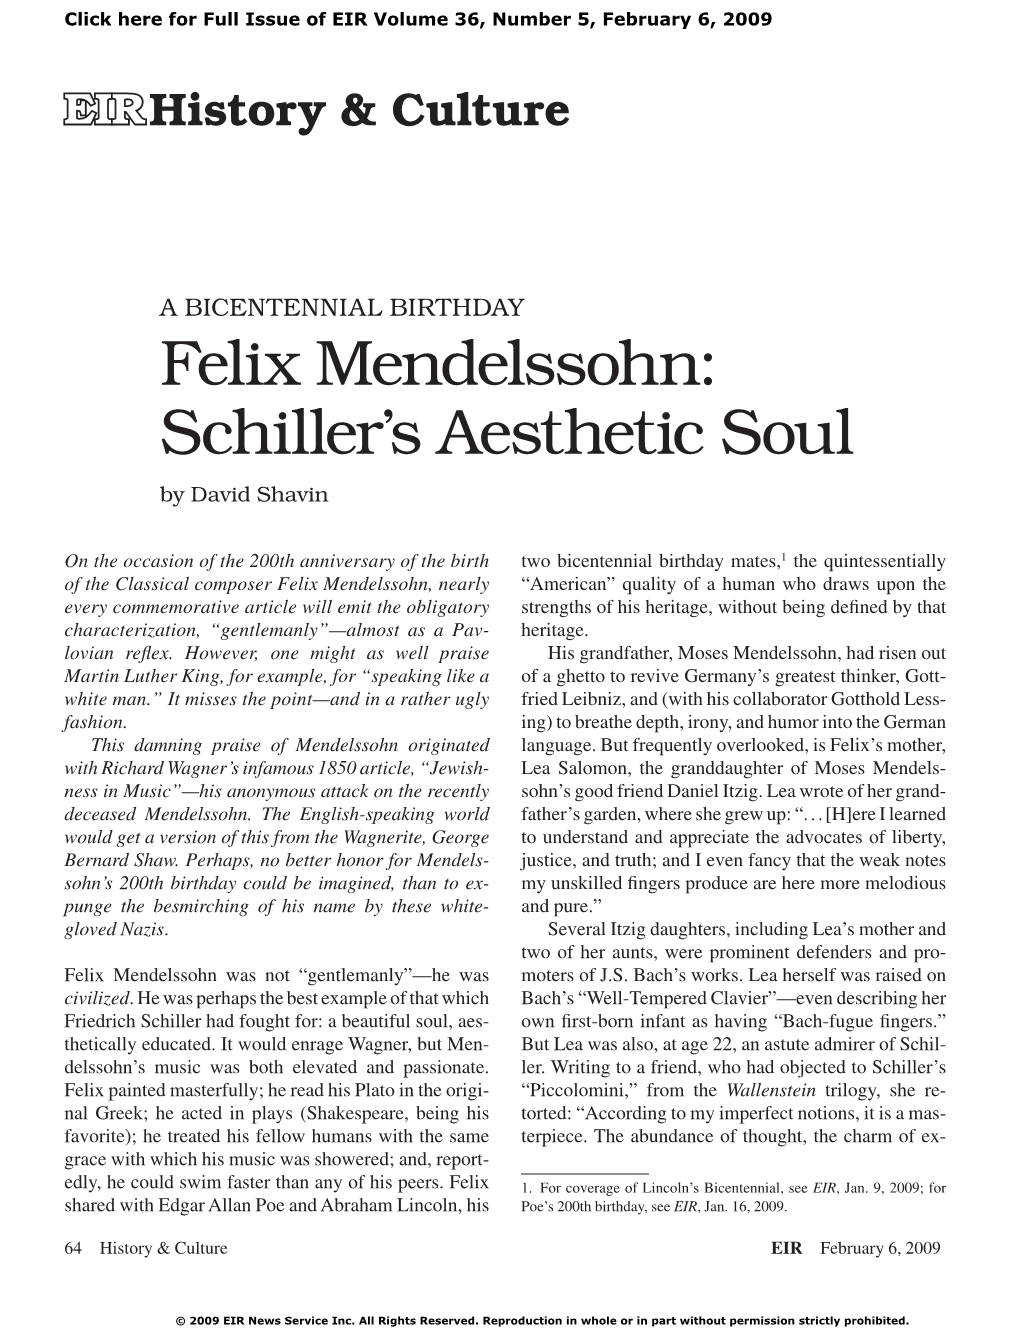 Felix Mendelssohn: Schiller's Aesthetic Soul